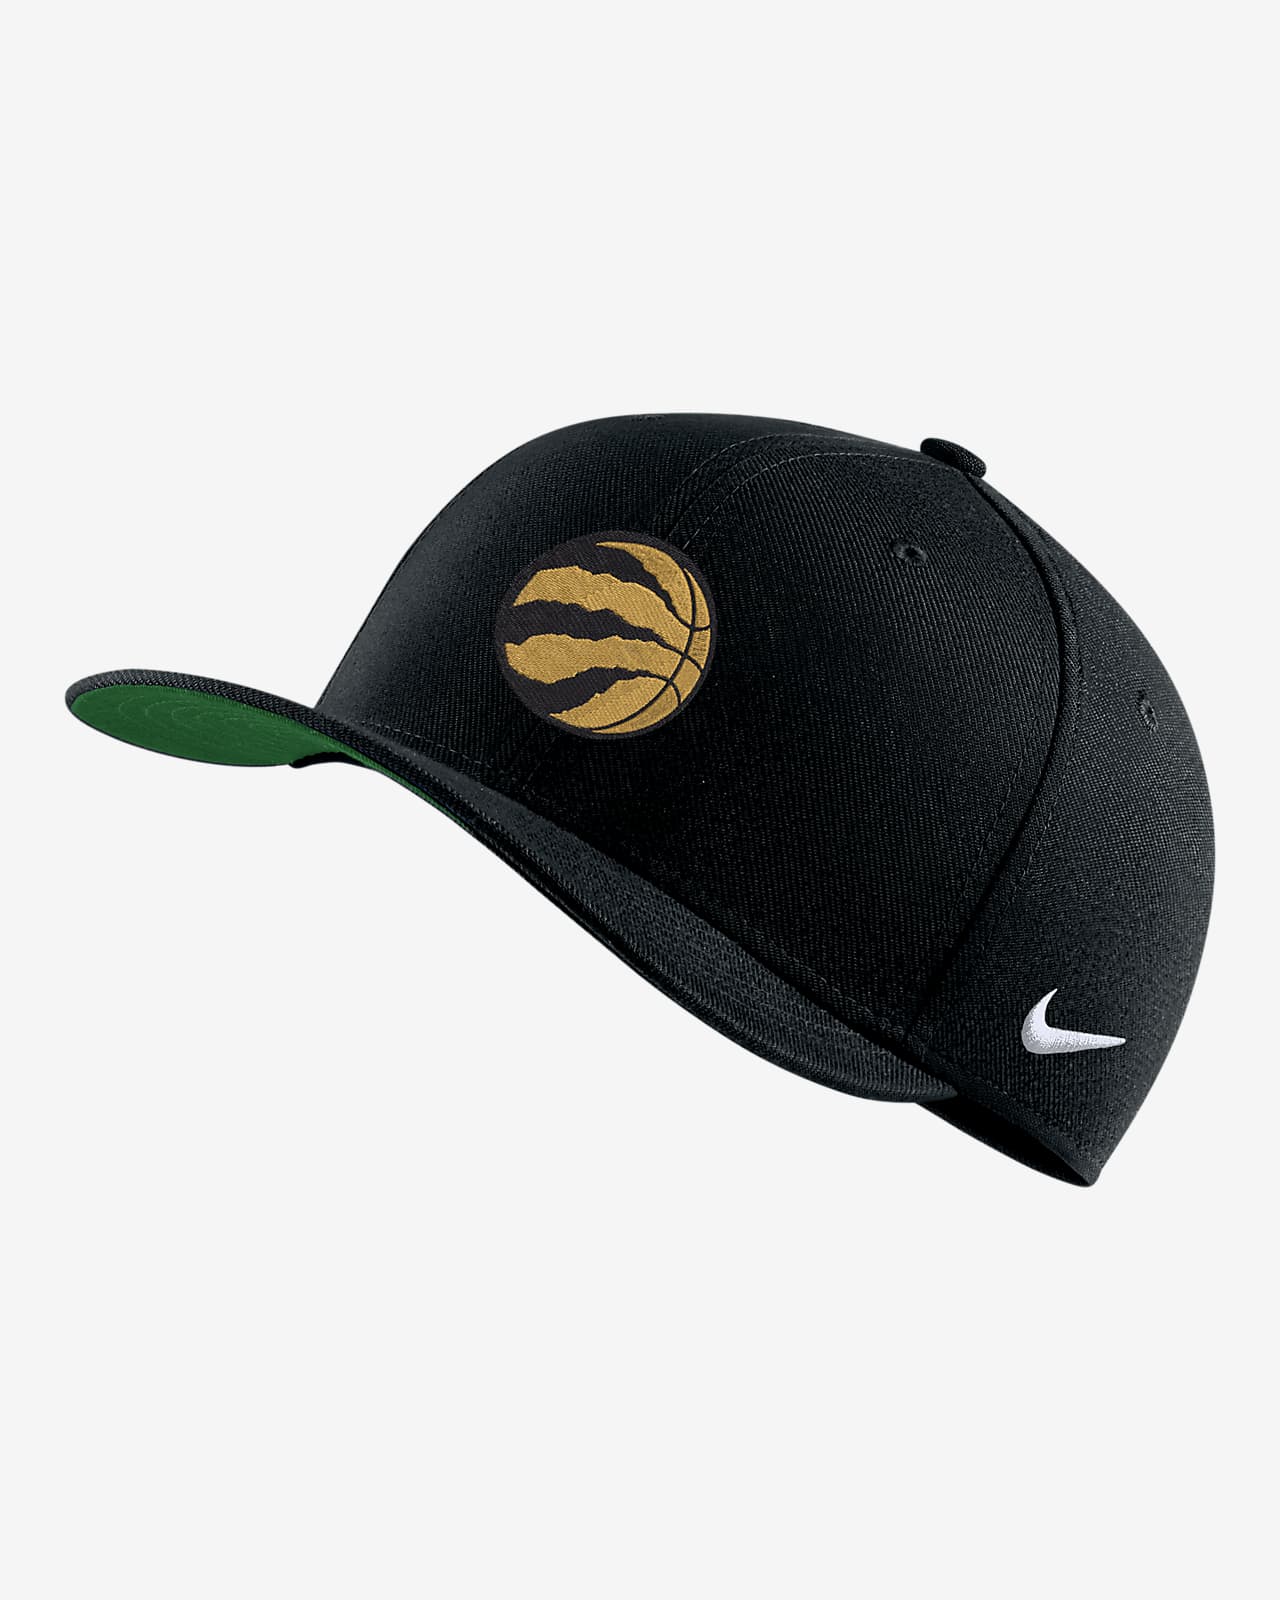 Toronto Raptors City Edition Nike NBA Swoosh Flex Cap